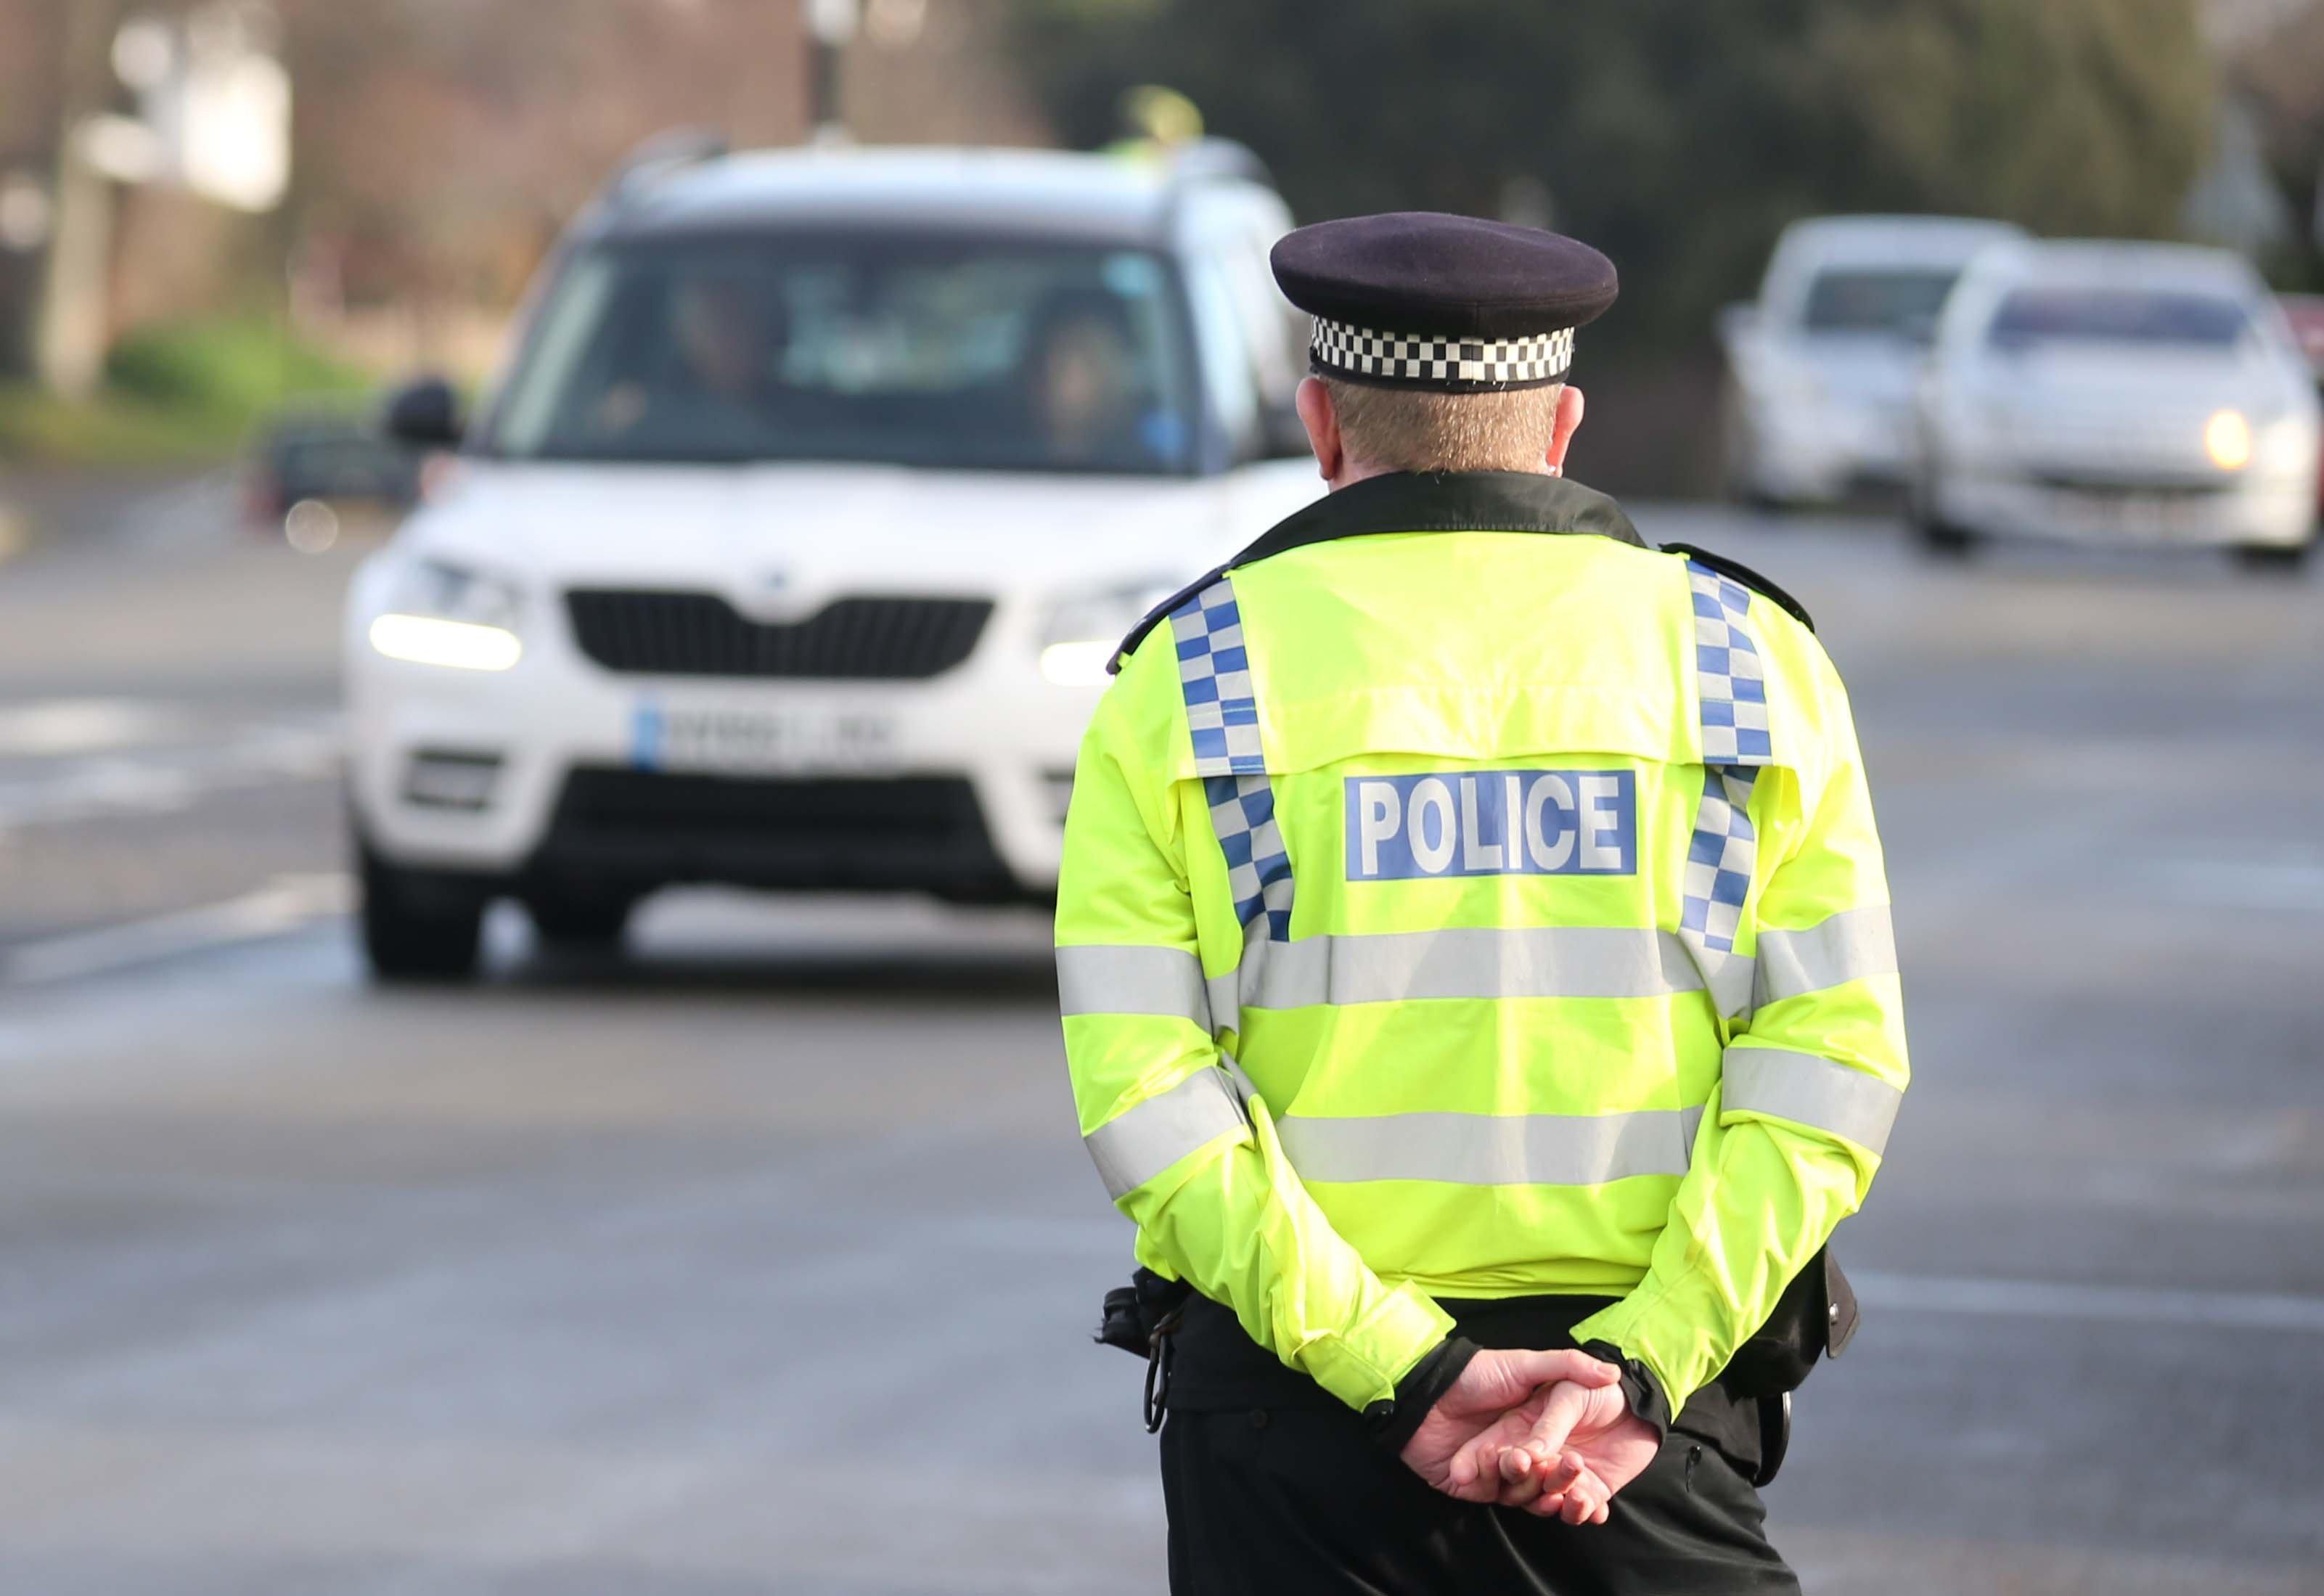 Officers checking drivers in Upper Shoreham Road, Shoreham